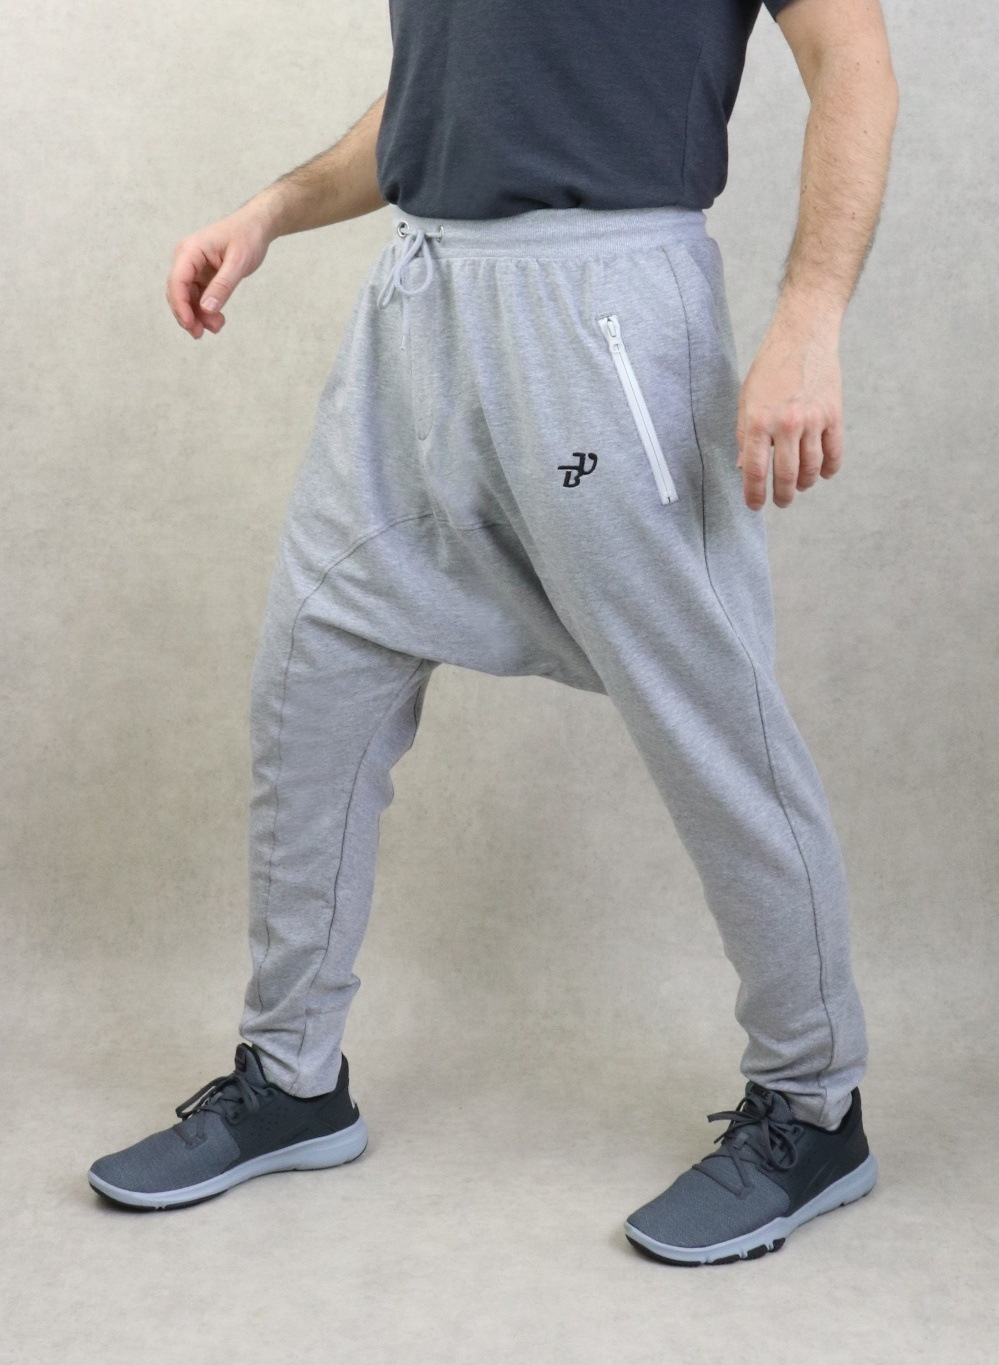 Pantalon jogging Seroual léger poches zip blanches pour homme - Sarouel  Marque Best Ummah - Couleur Gris clair chiné - Prêt à porter et accessoires  sur